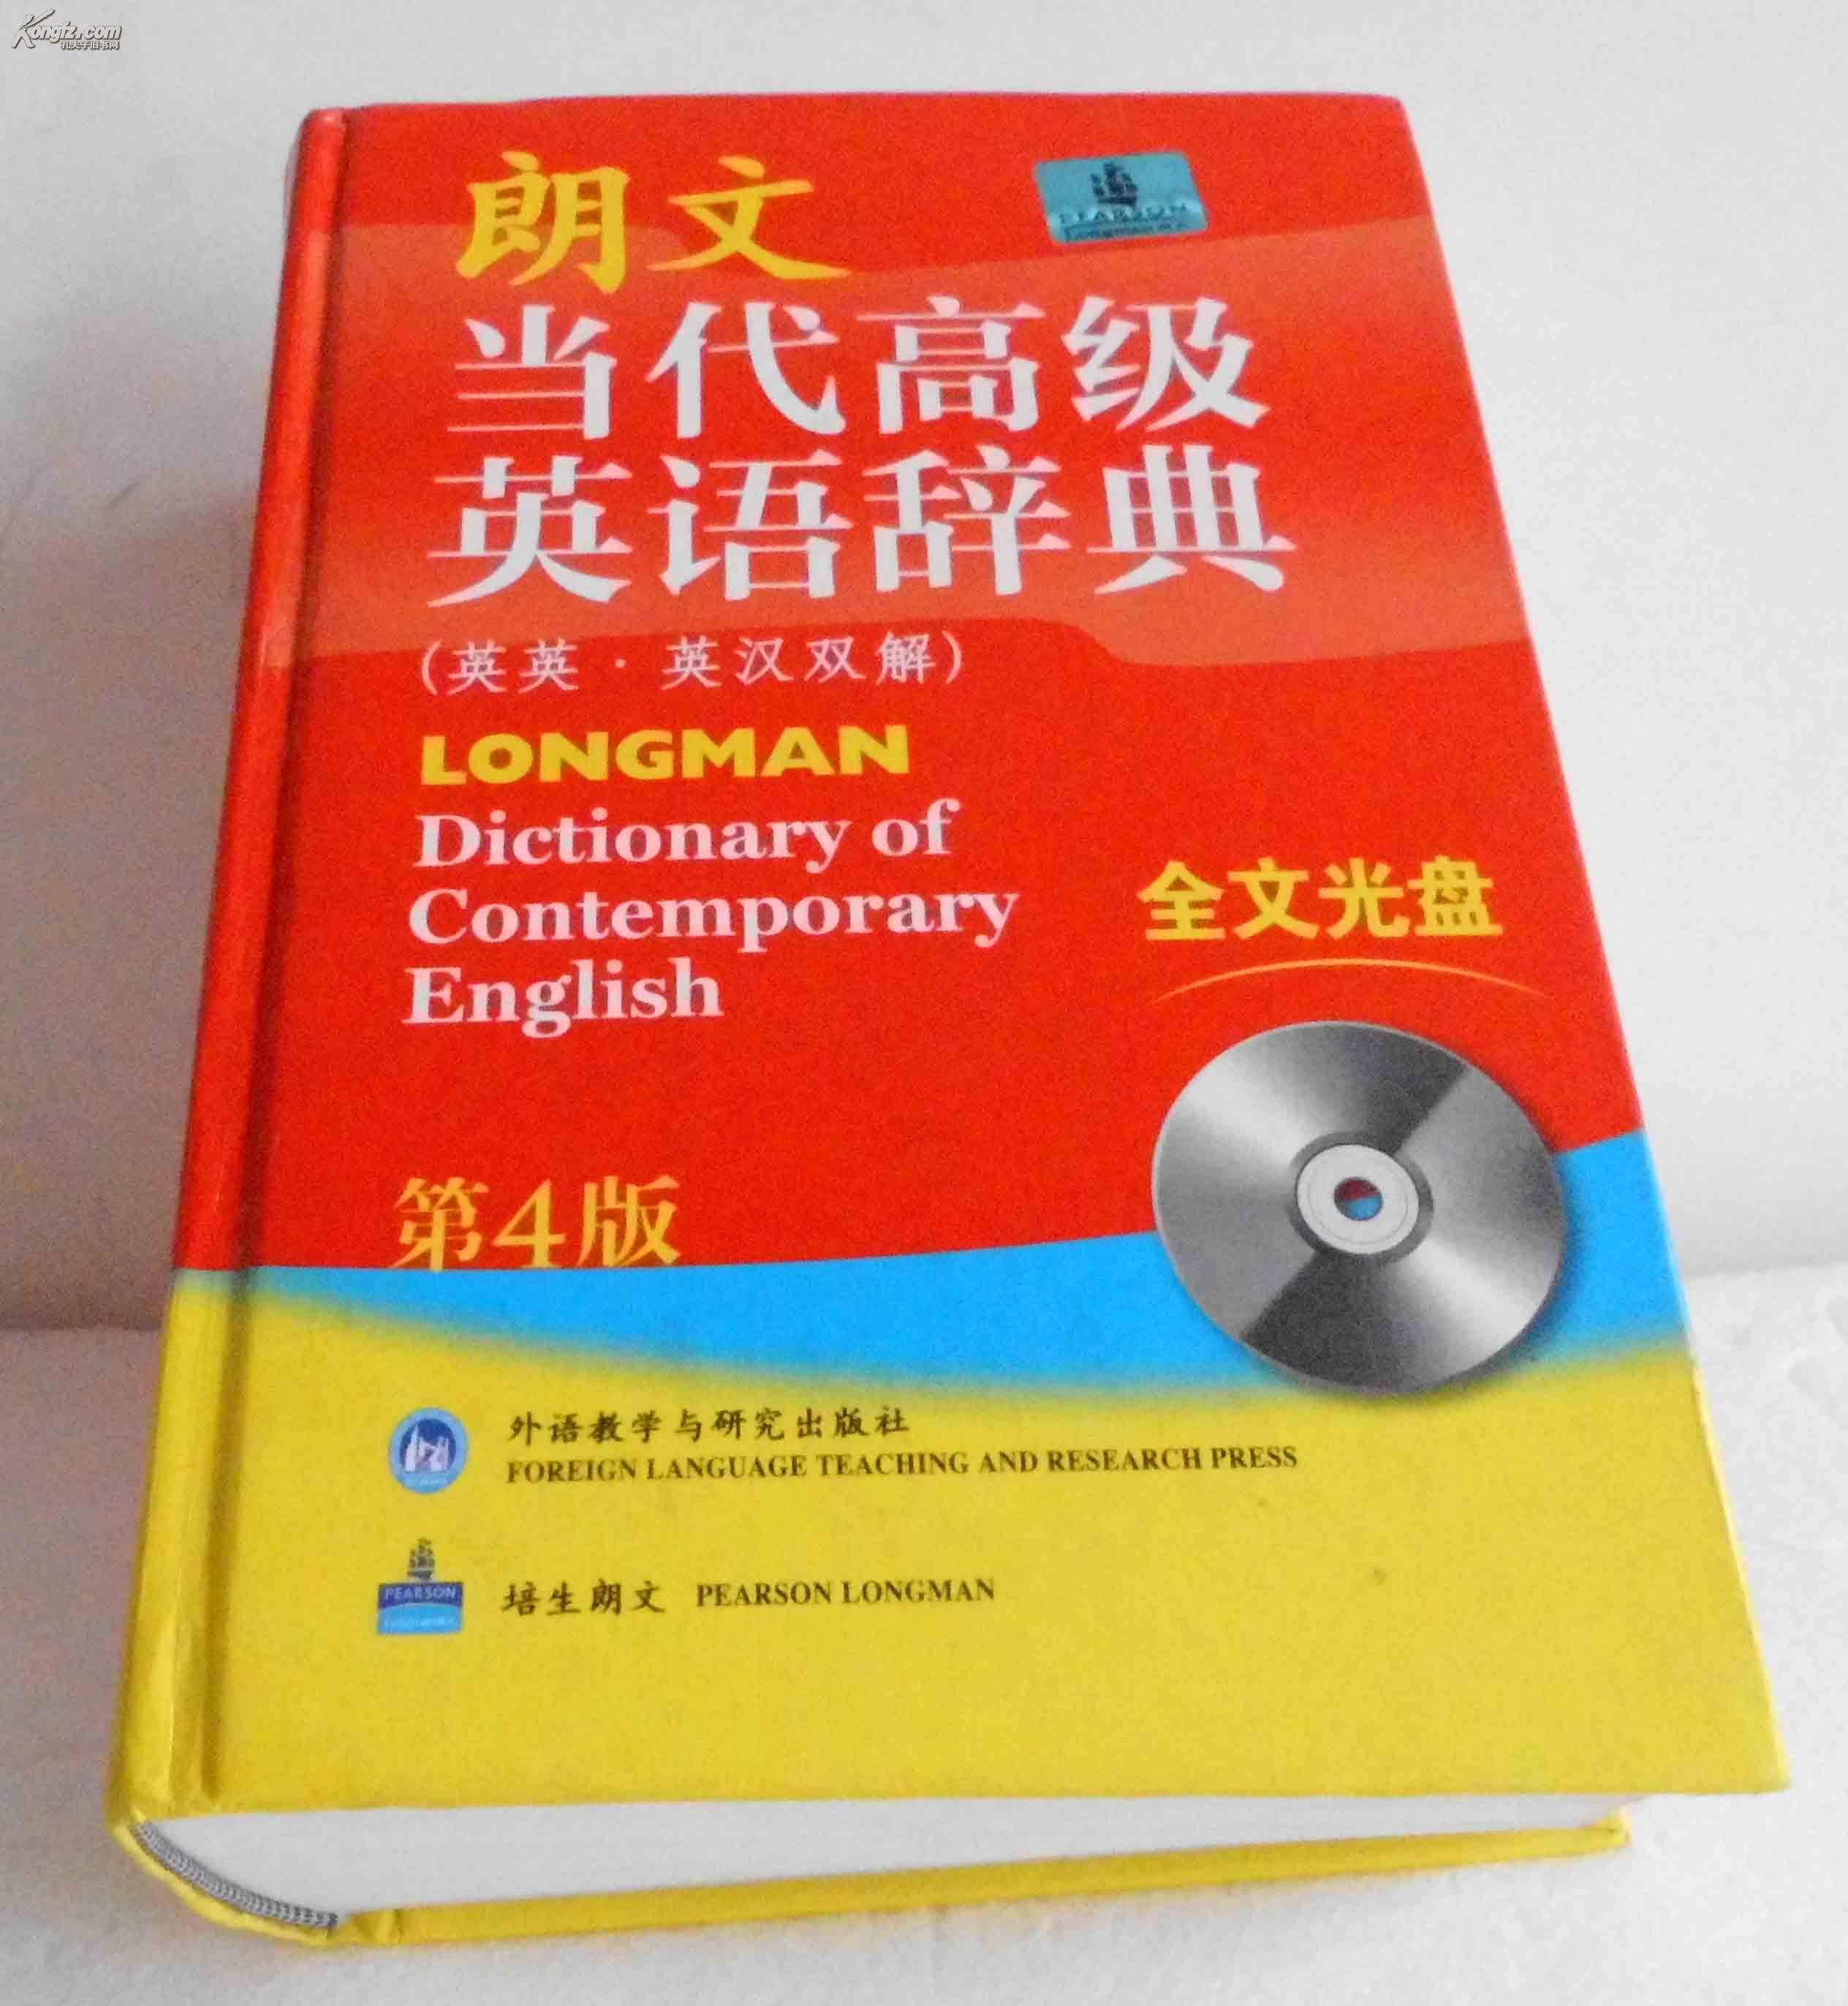 朗文当代高级英语辞典英英英汉双解第四版提供全文光盘内容下载